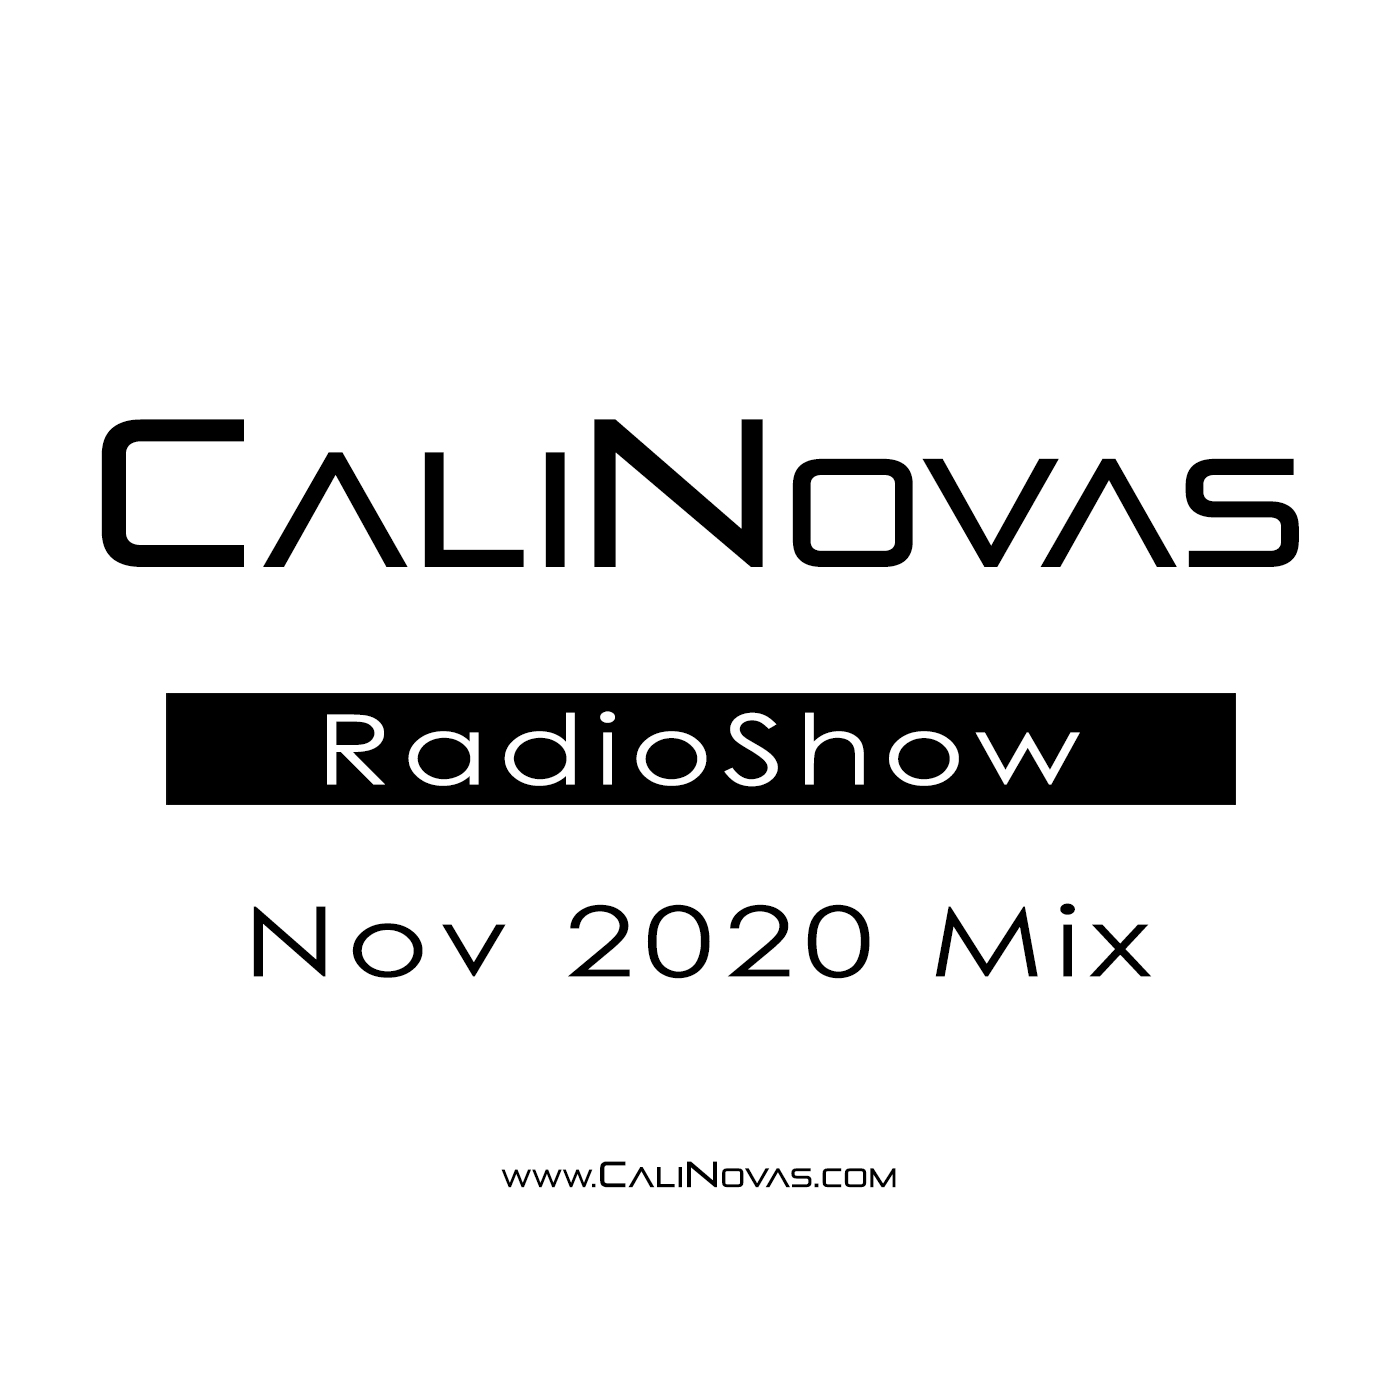 CaliNovas Radio Show - November 2020 Mix